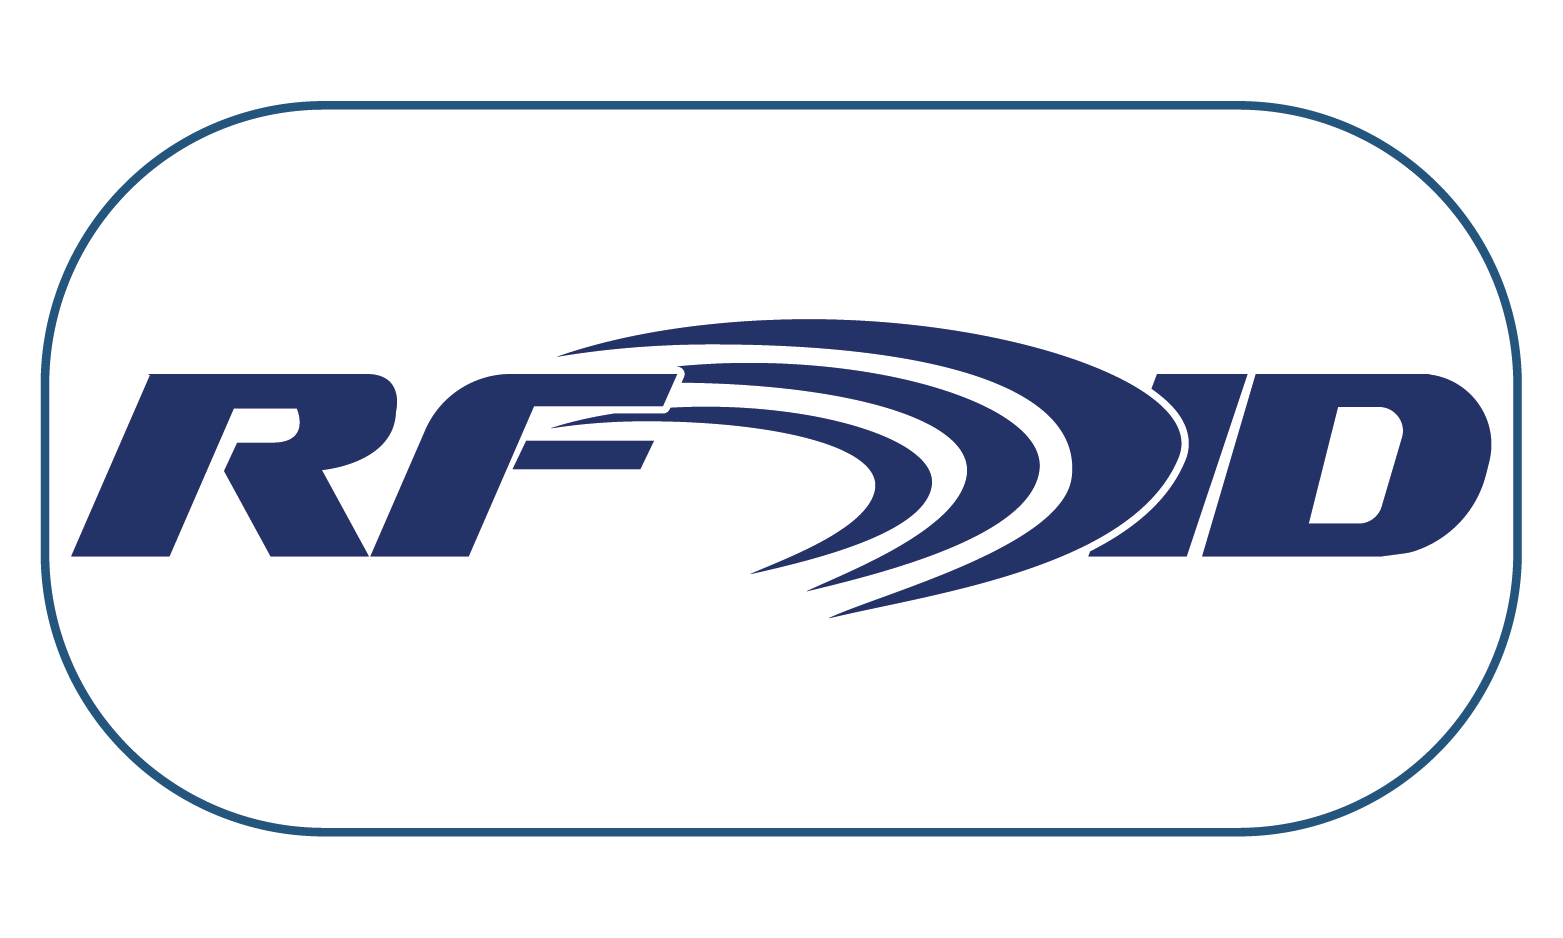 RFID Inc. sistemas de lectura y etiquetas RFID